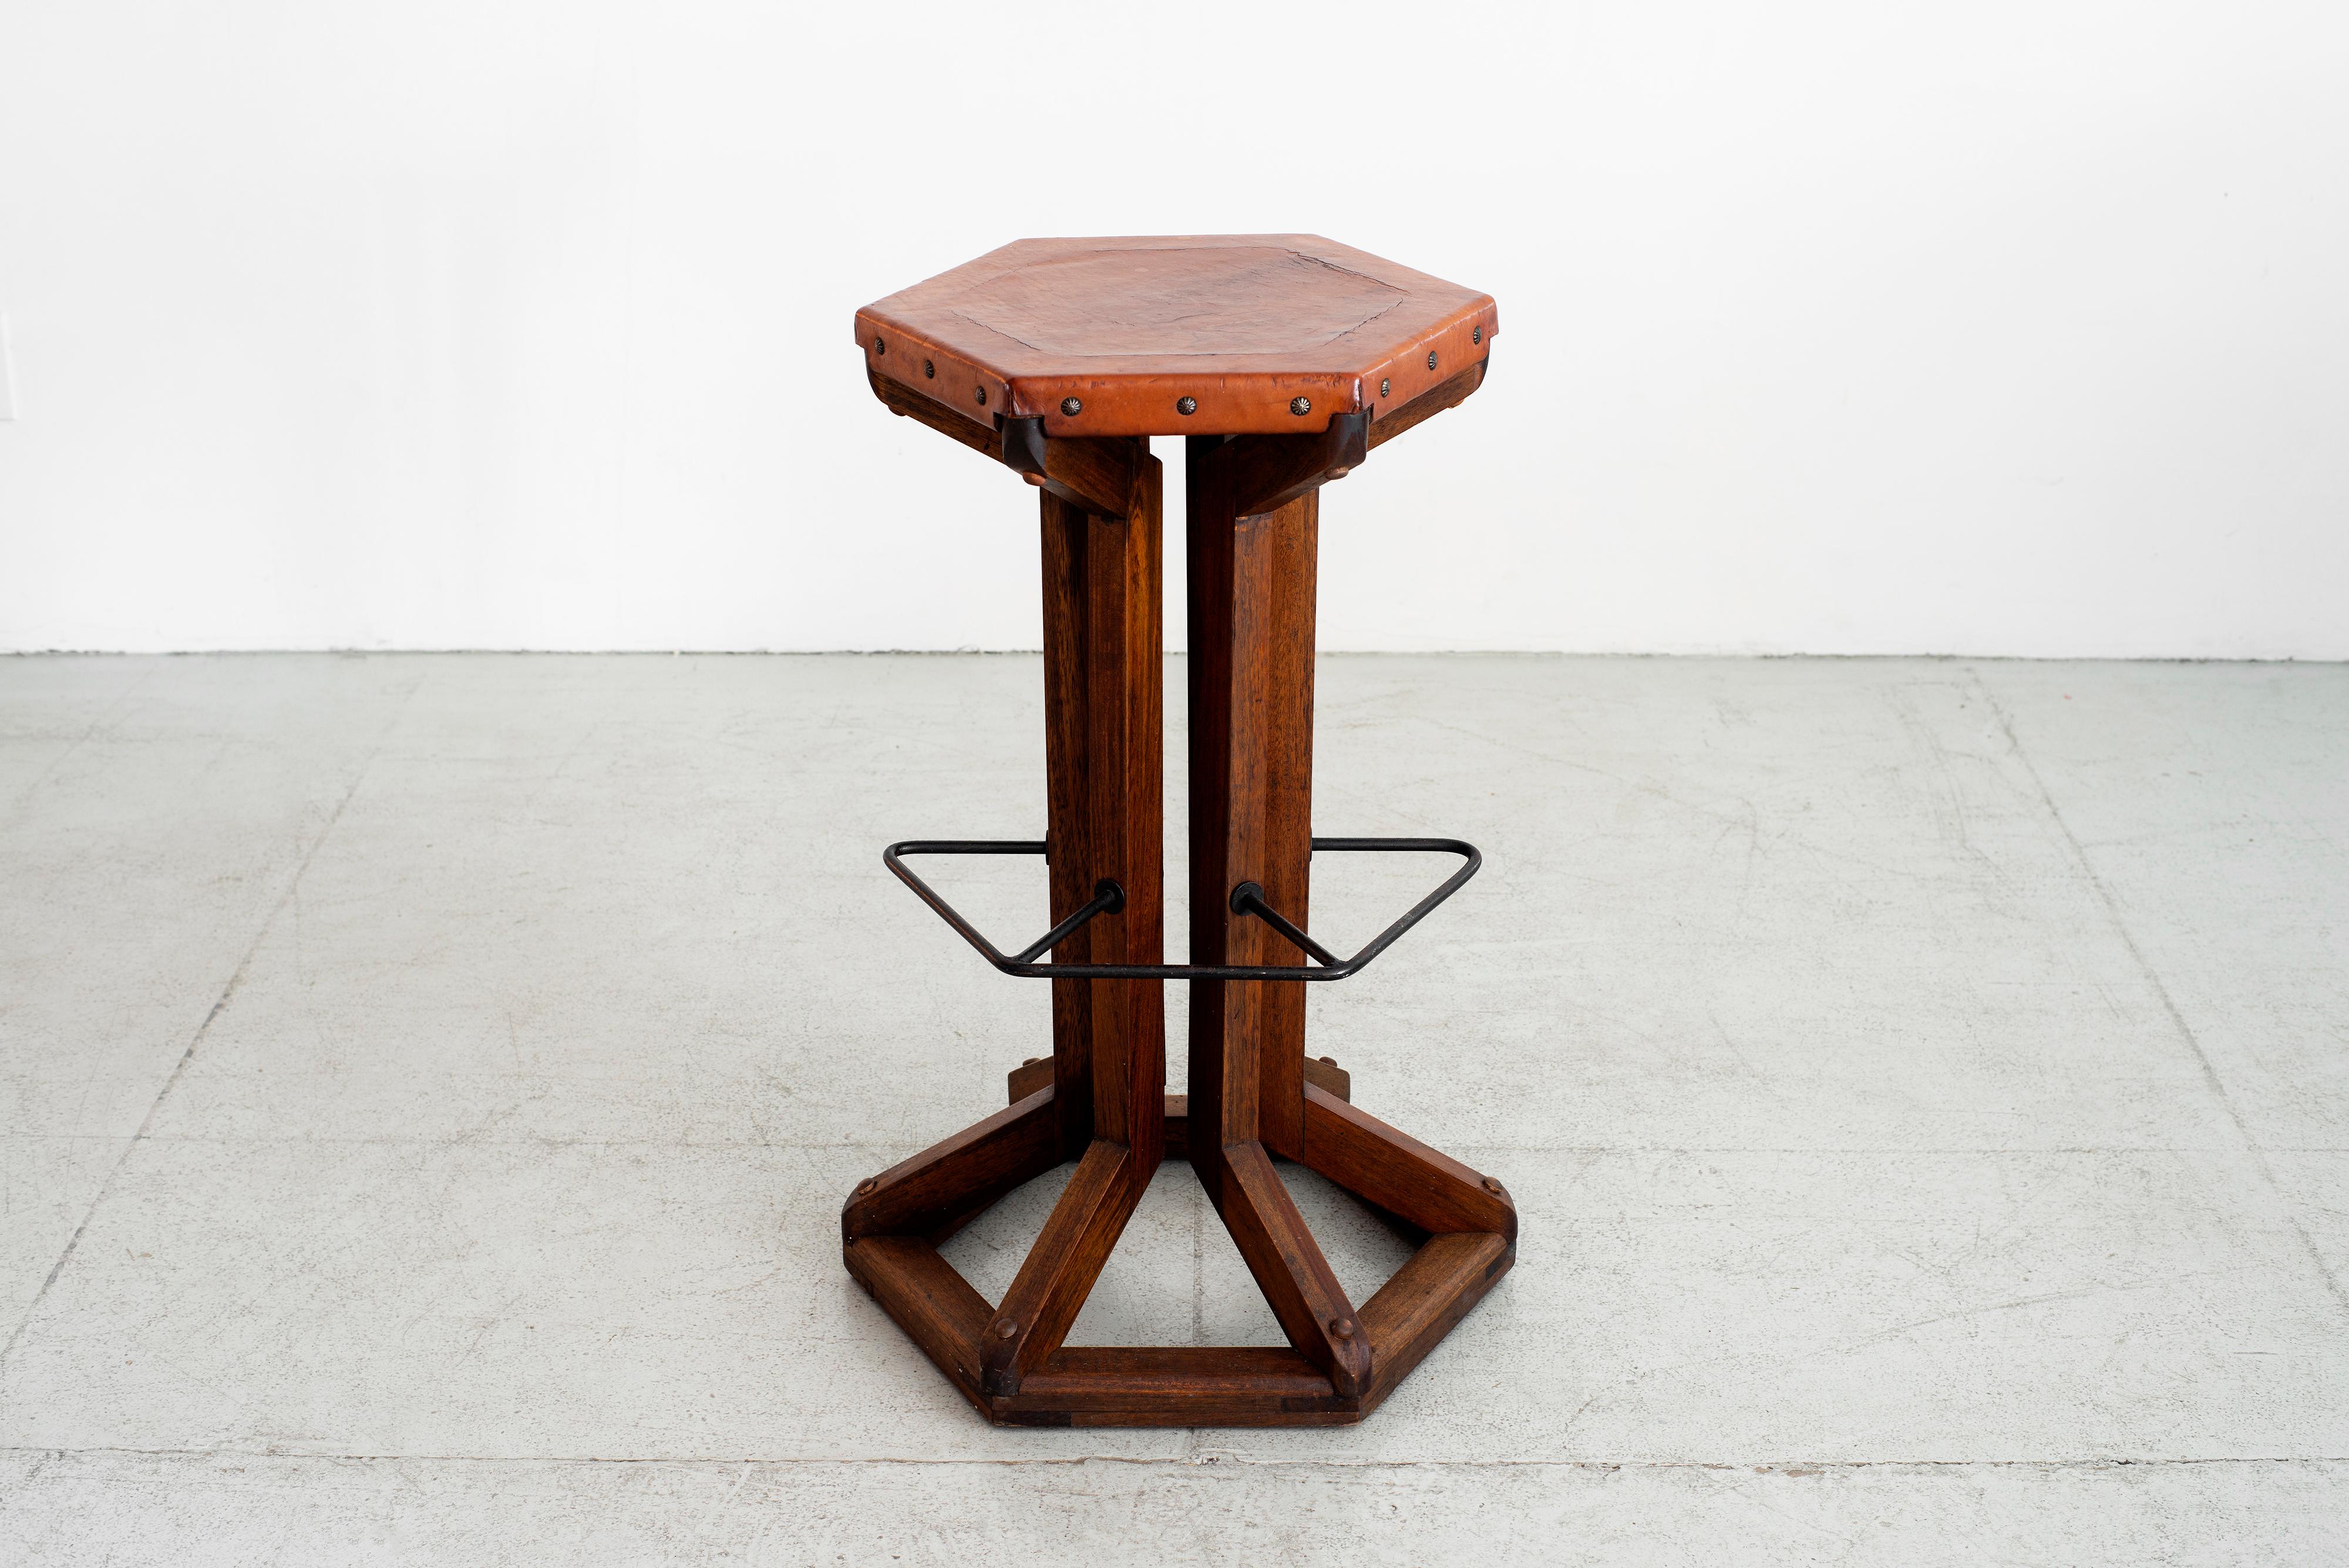 craft stool